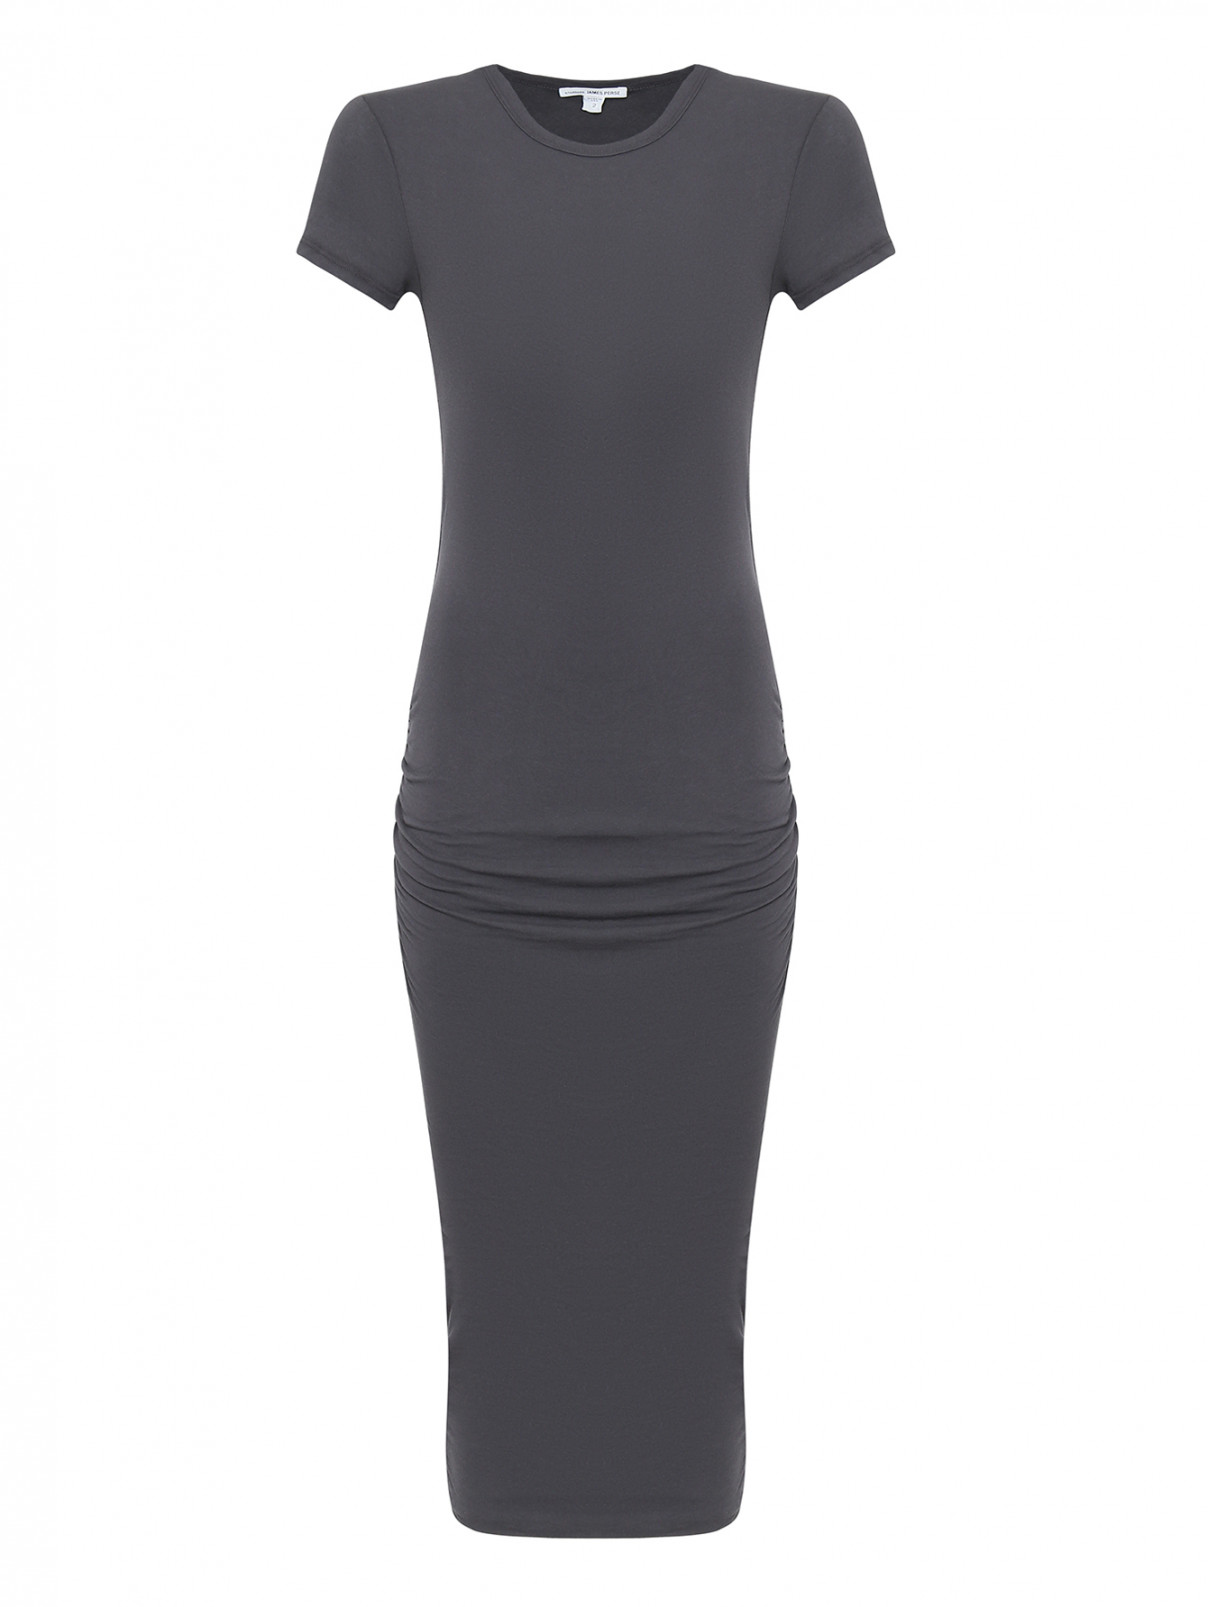 Платье хлопковое со сборкой James Perse  –  Общий вид  – Цвет:  Серый